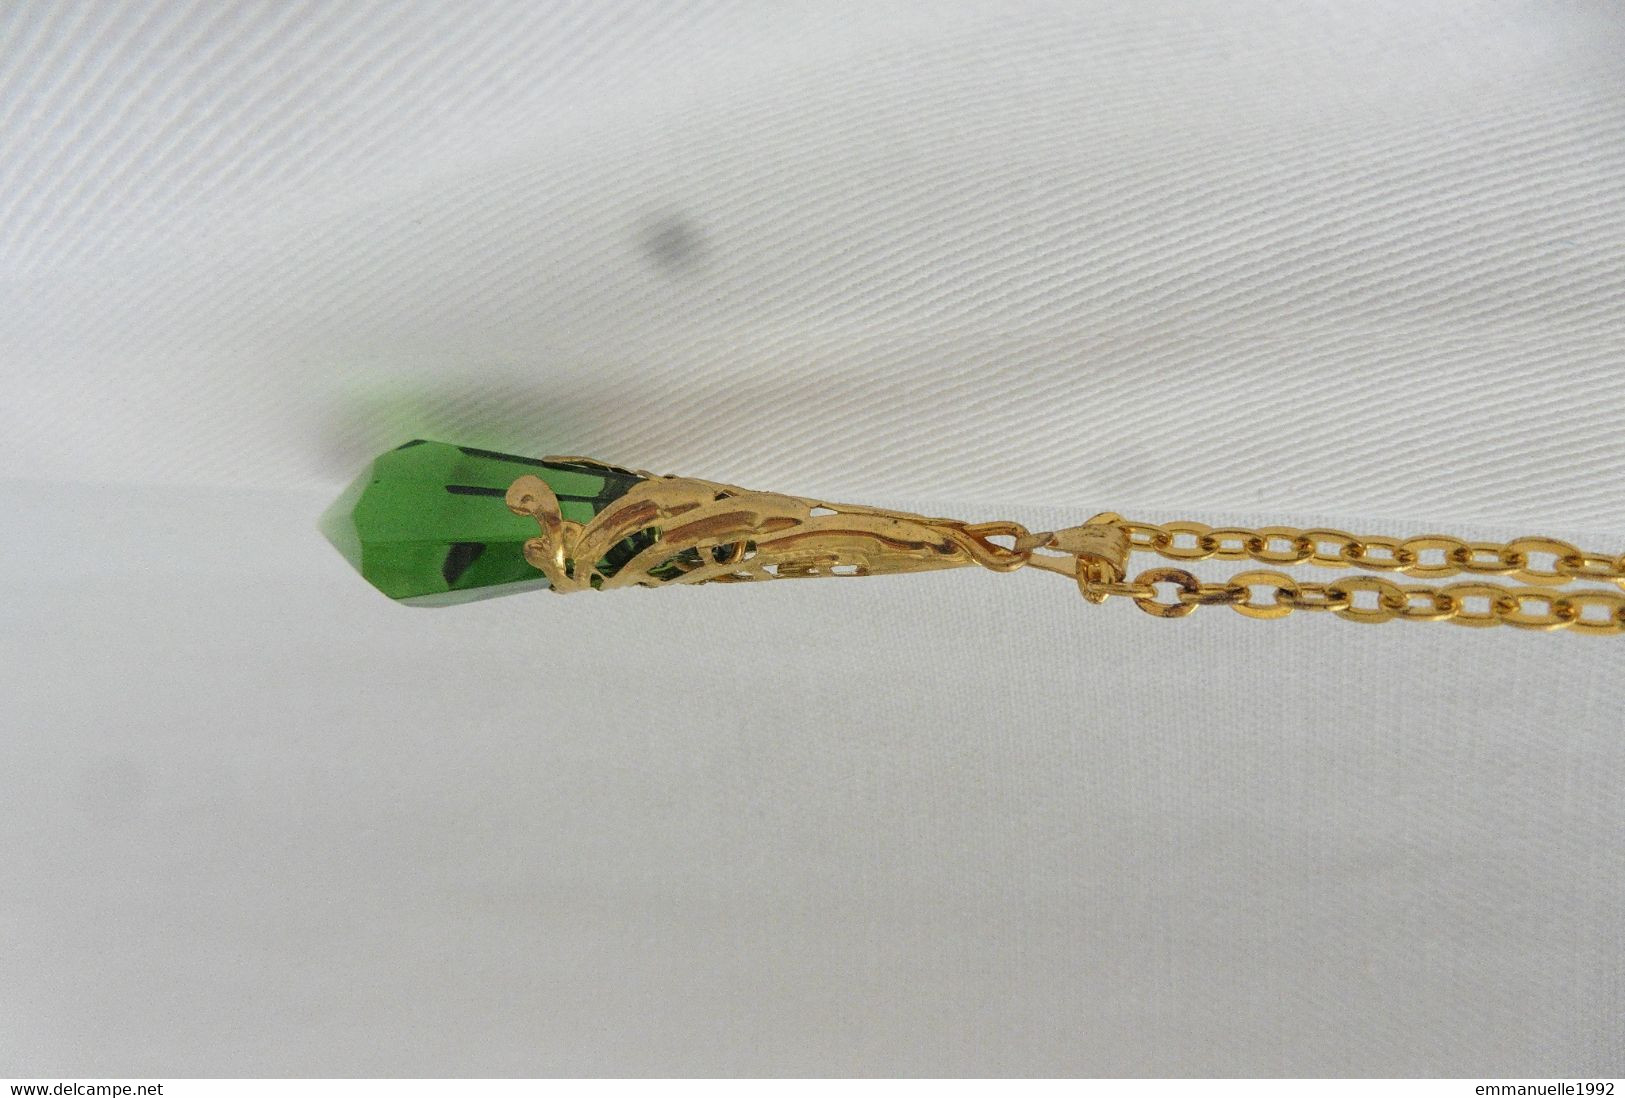 NEUF - Chaîne dorée et pendentif GINGERCAKE cristal vert fantaisie porte-bonheur